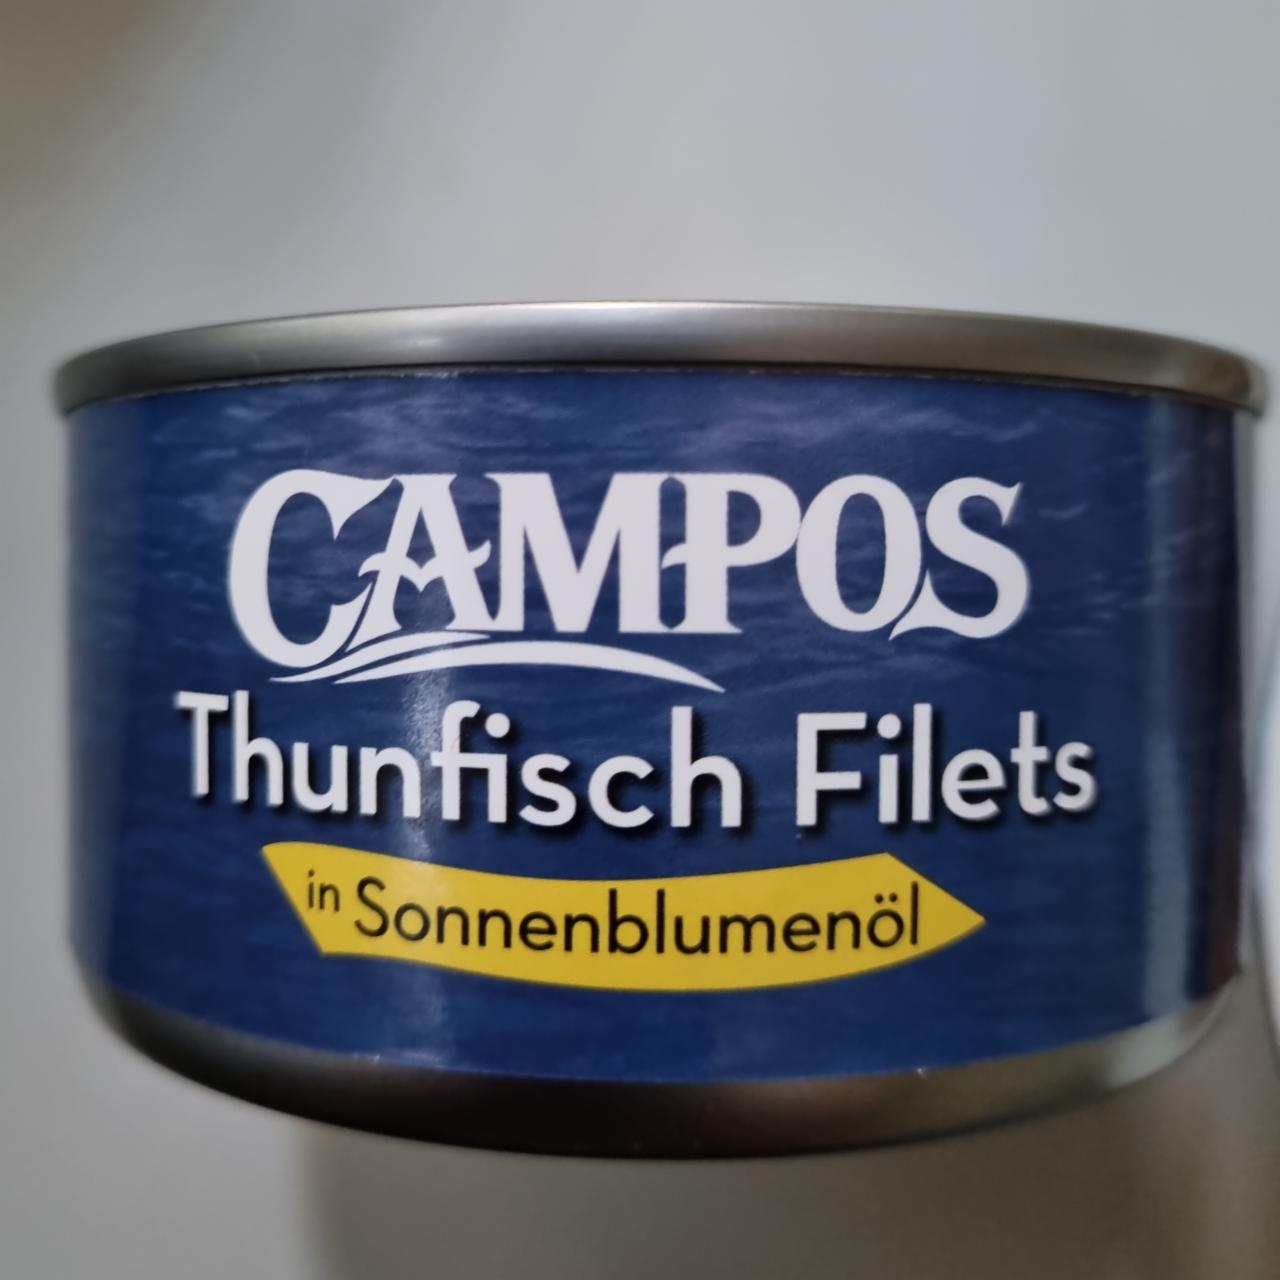 Фото - Thunfish filets филе тунца консерва Campus